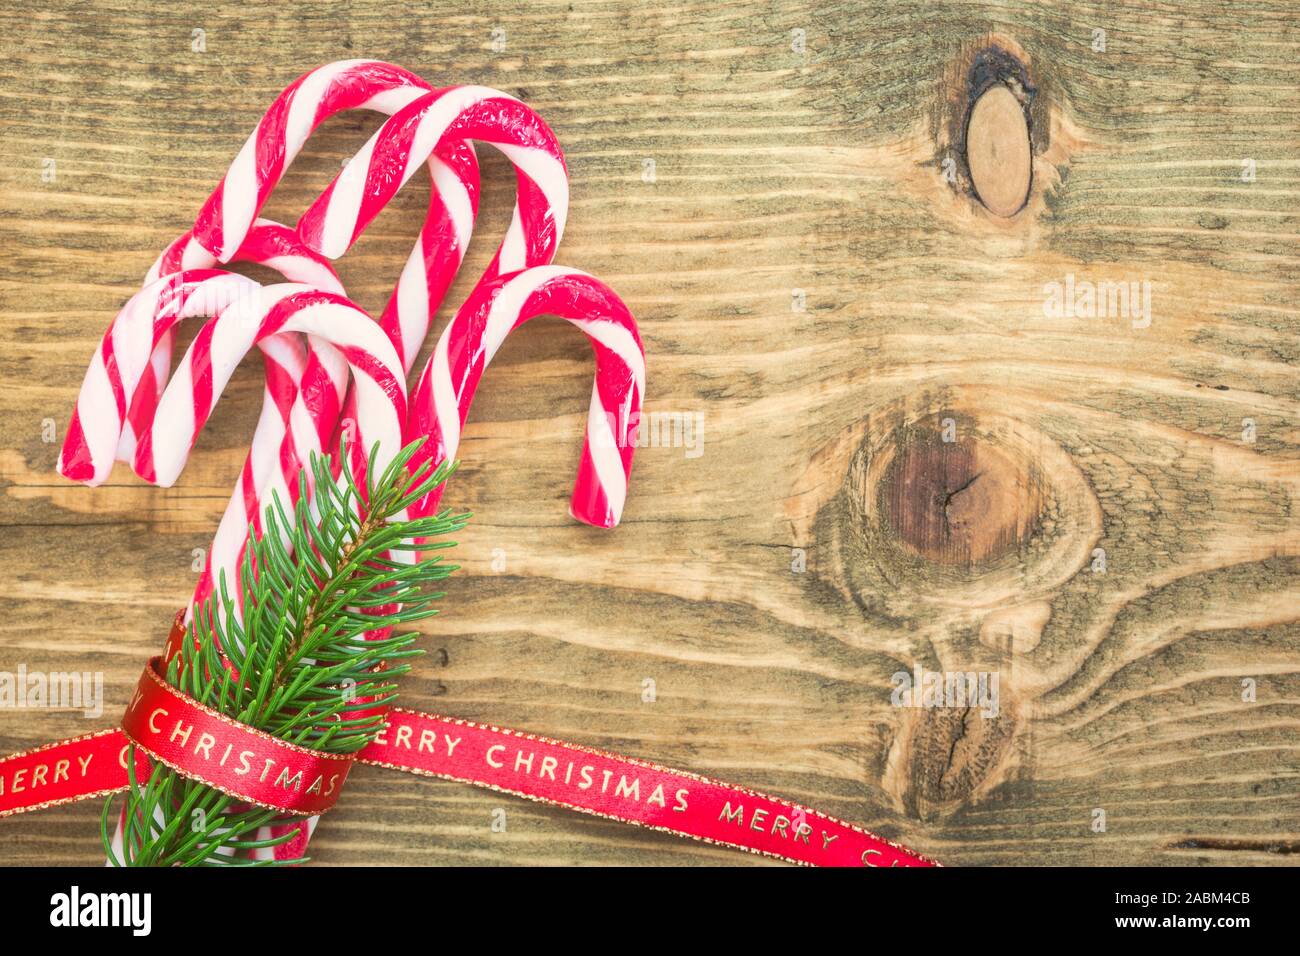 Des cannes de bonbon enveloppé de ruban rouge de Noël sur fond de bois. Tons vintage photo. Vue de dessus avec l'exemplaire de l'espace sur le côté droit. Banque D'Images